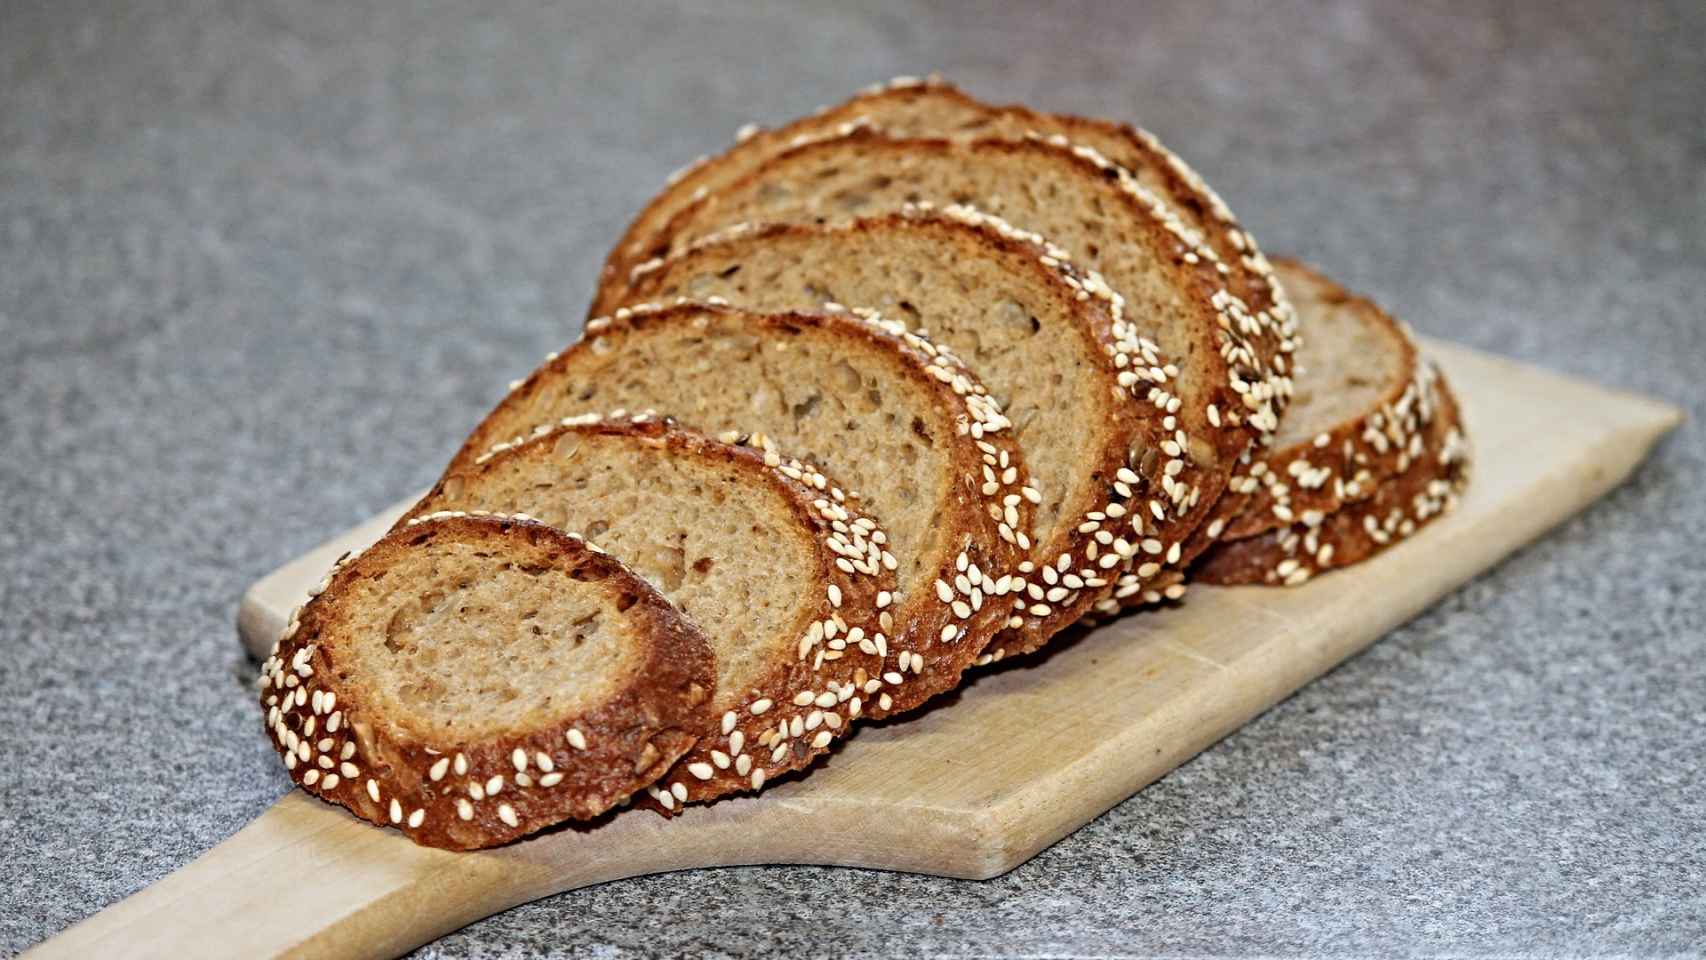 La harina es el factor que más influye para determinar si un pan es más o menos saludable